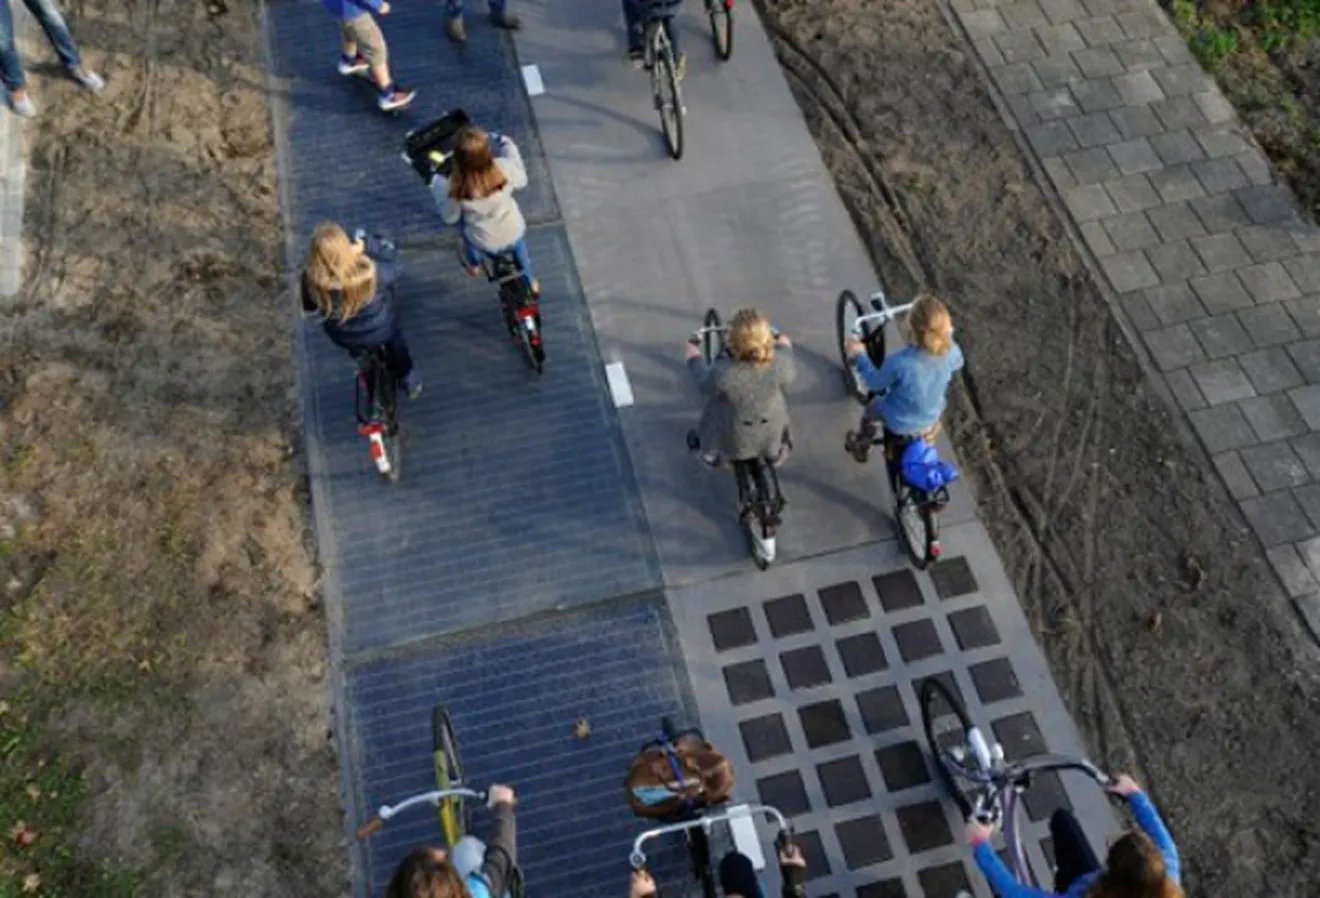 La carretera solar, ¿qué otros usos podríamos darle?